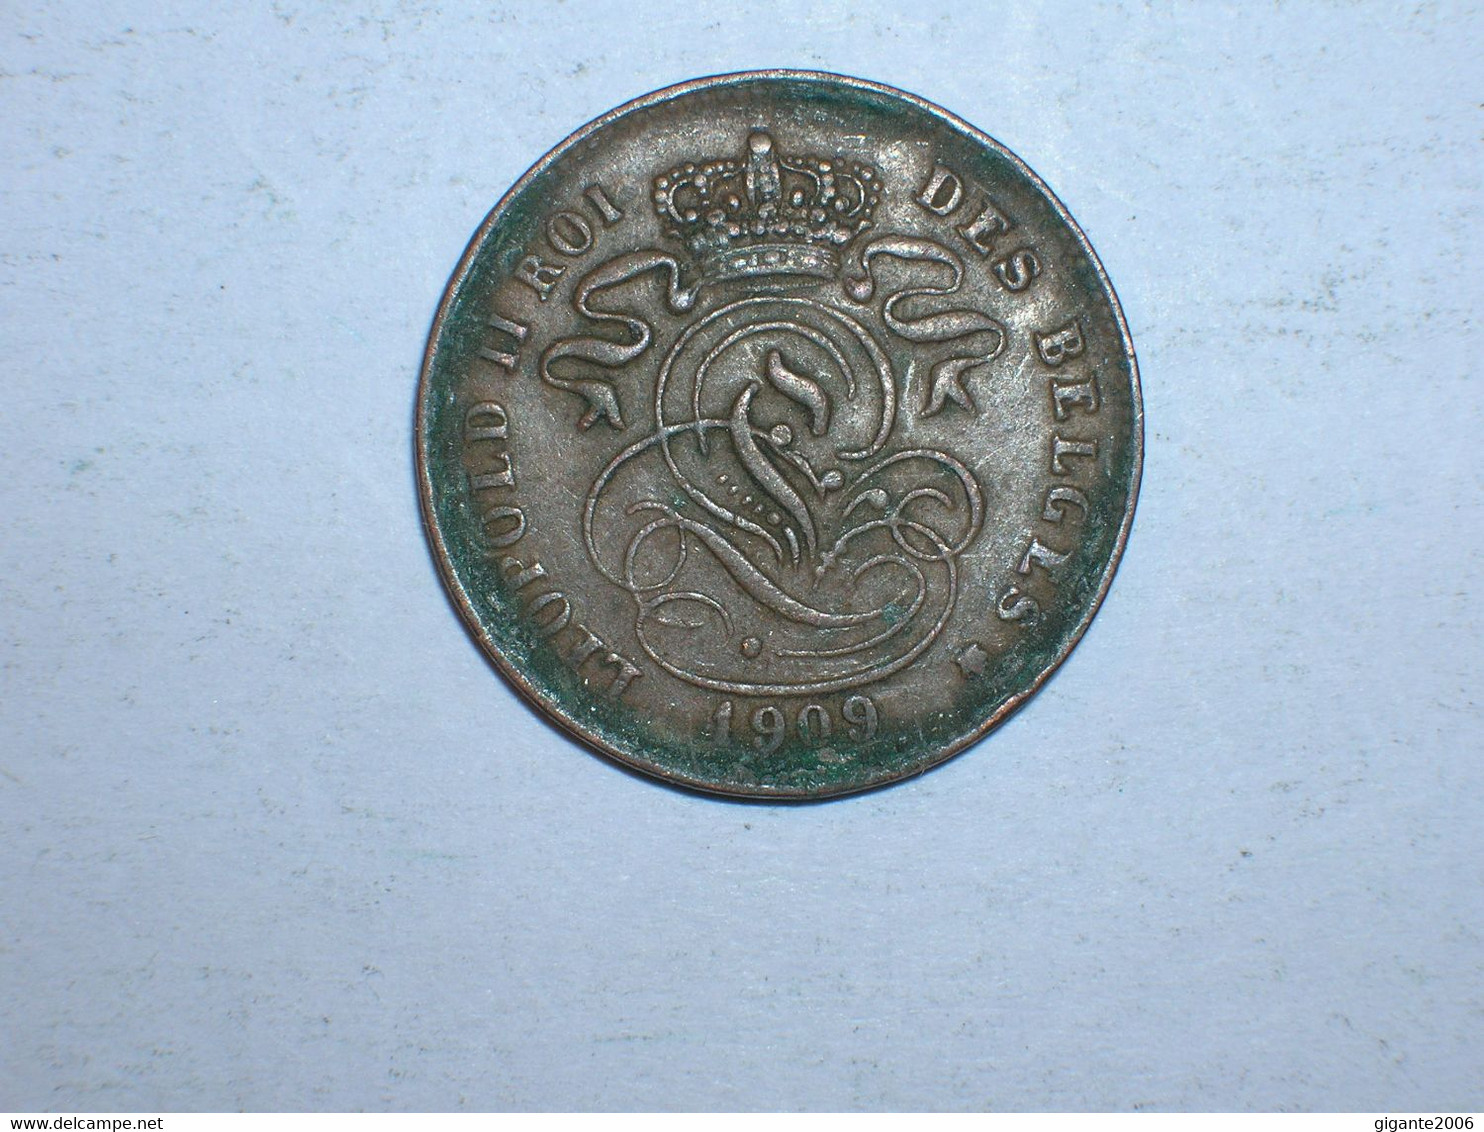 BELGICA 2 CENTIMOS 1909 FR (9211) - 2 Cent